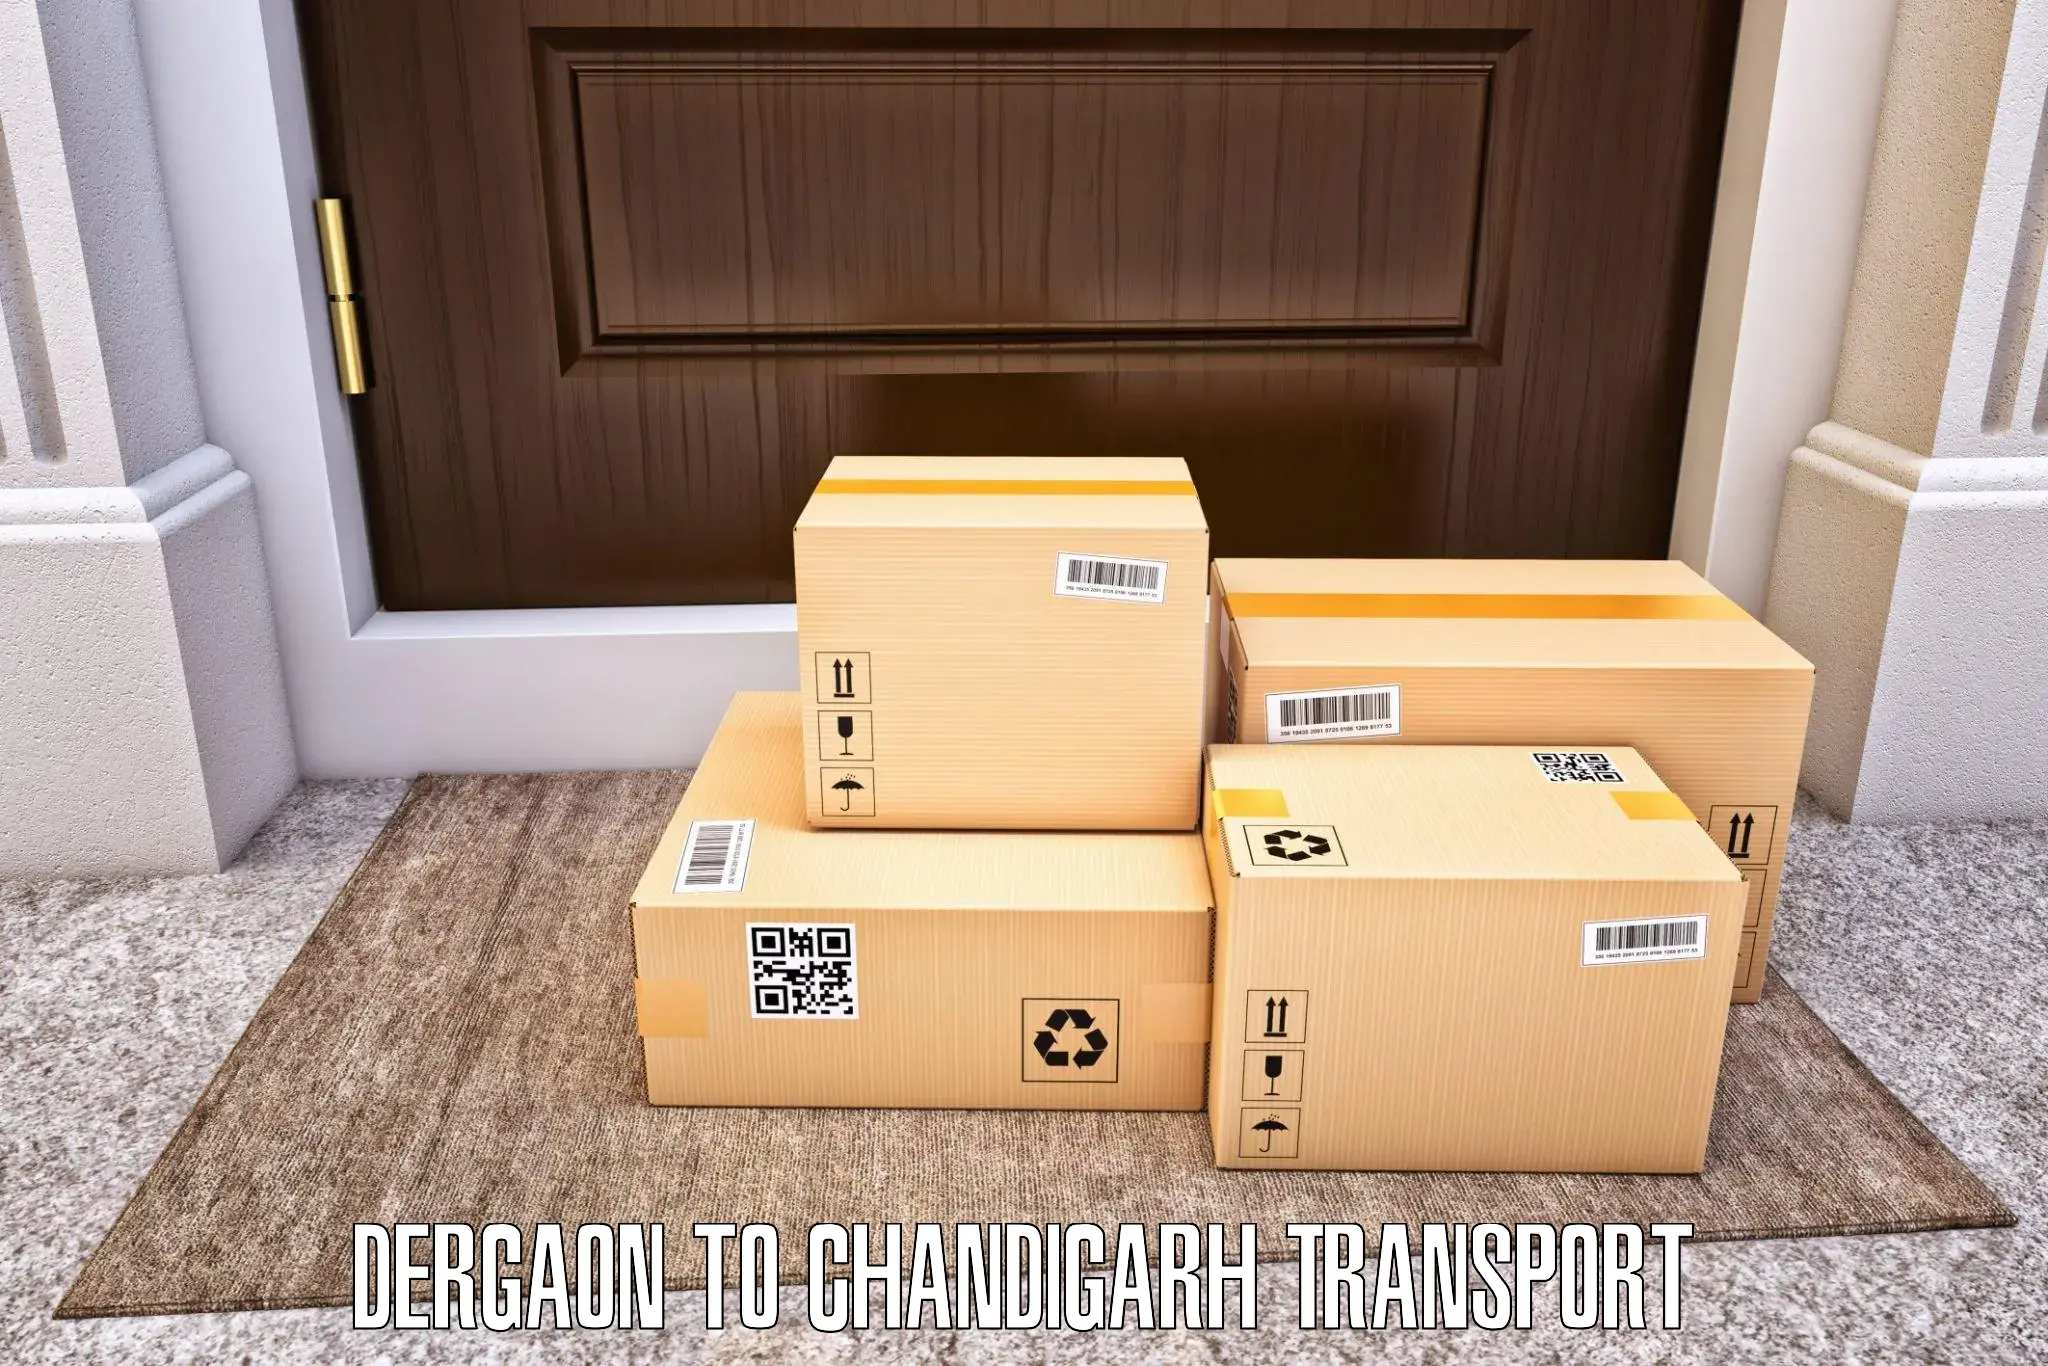 Two wheeler parcel service Dergaon to Chandigarh